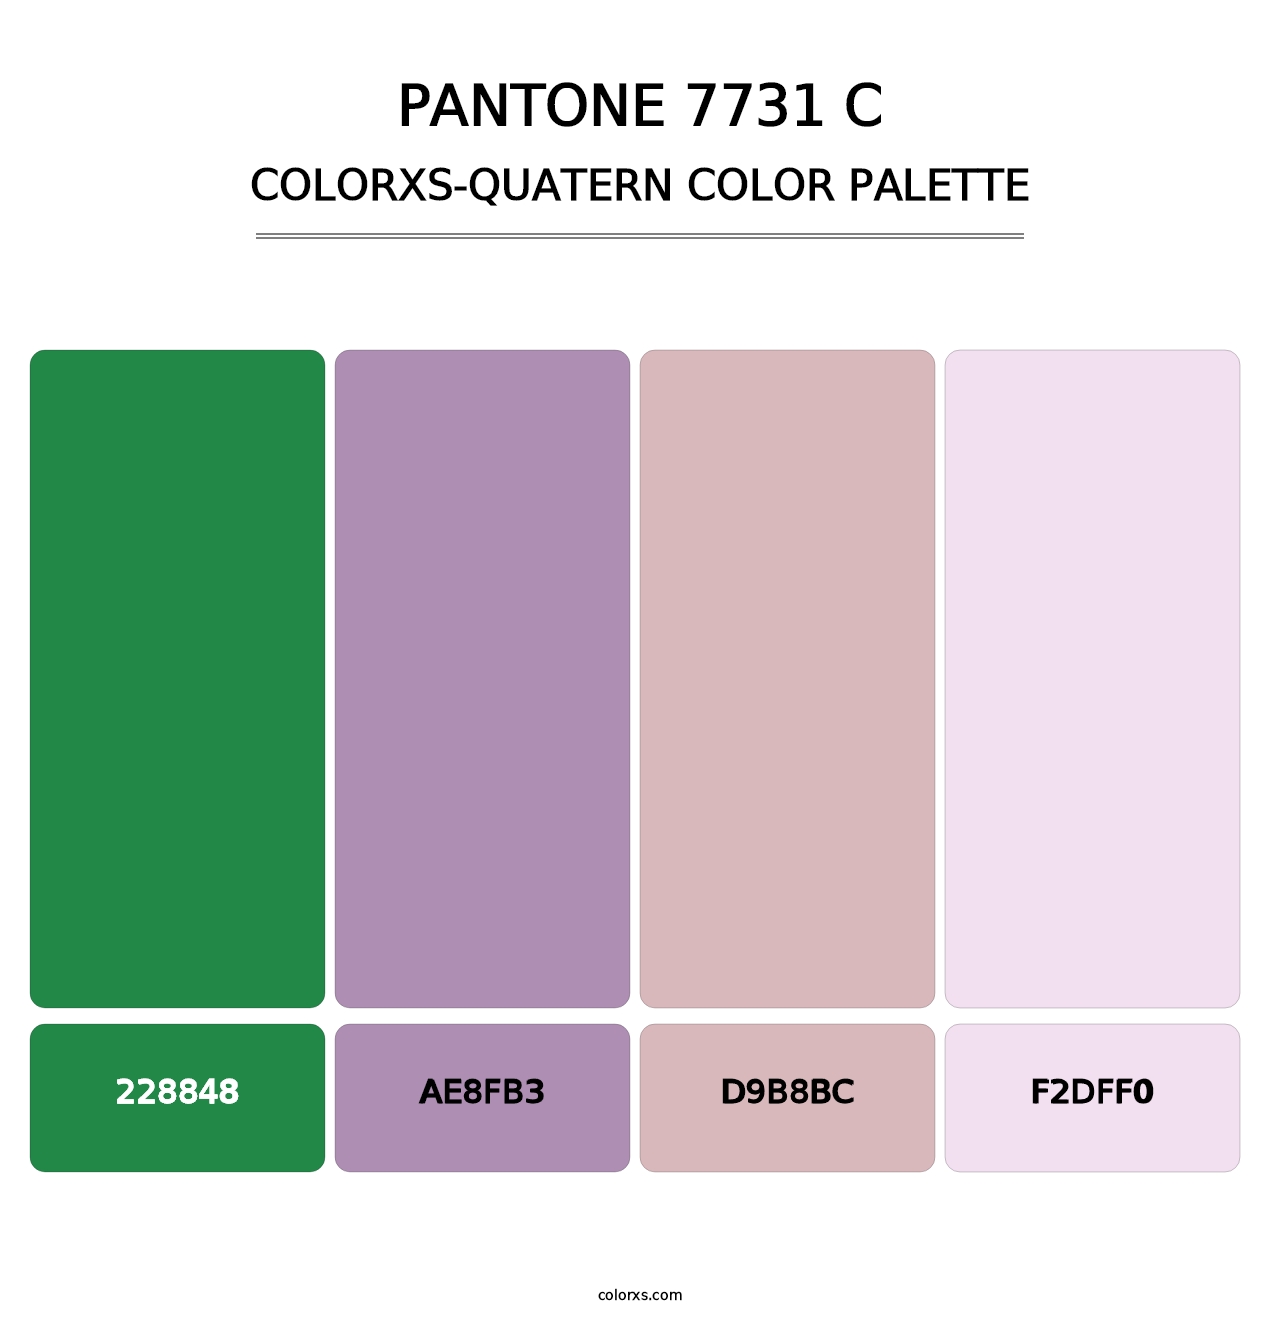 PANTONE 7731 C - Colorxs Quatern Palette